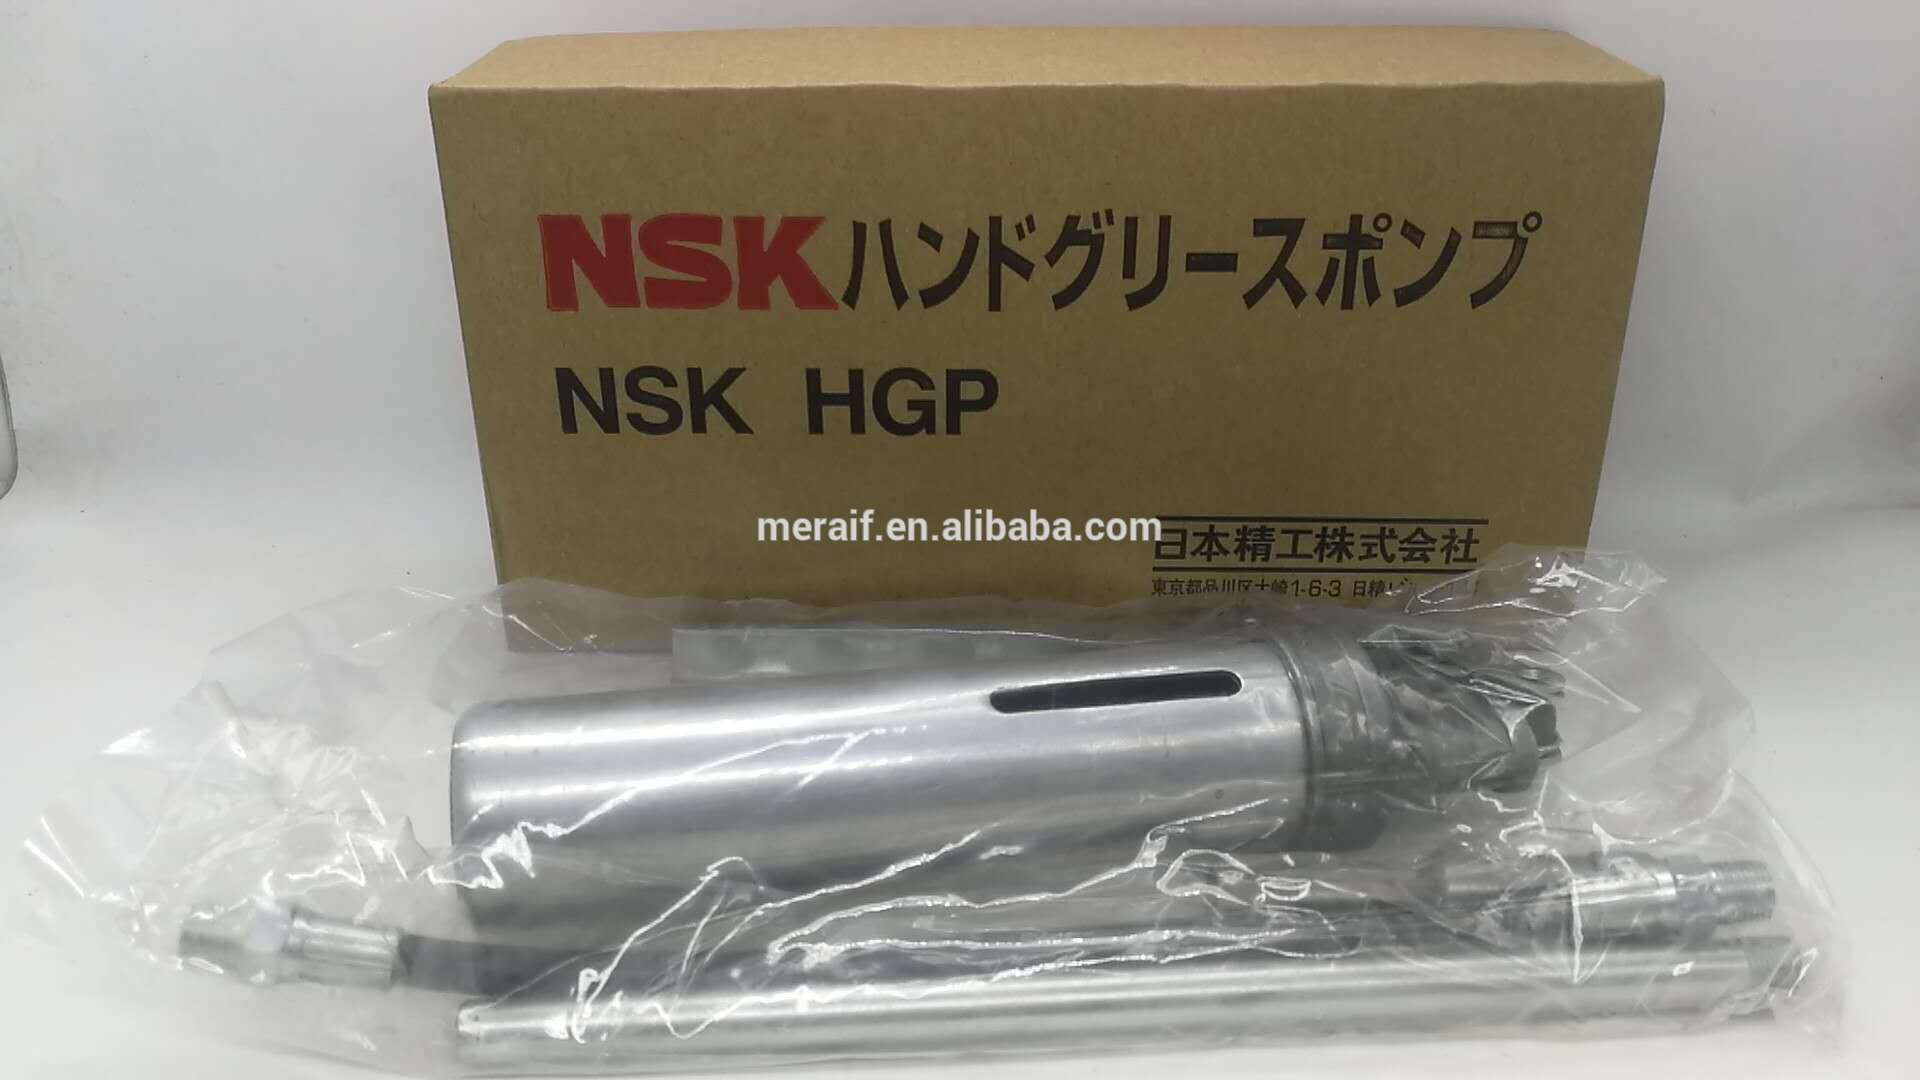 NSK HGP grease gun